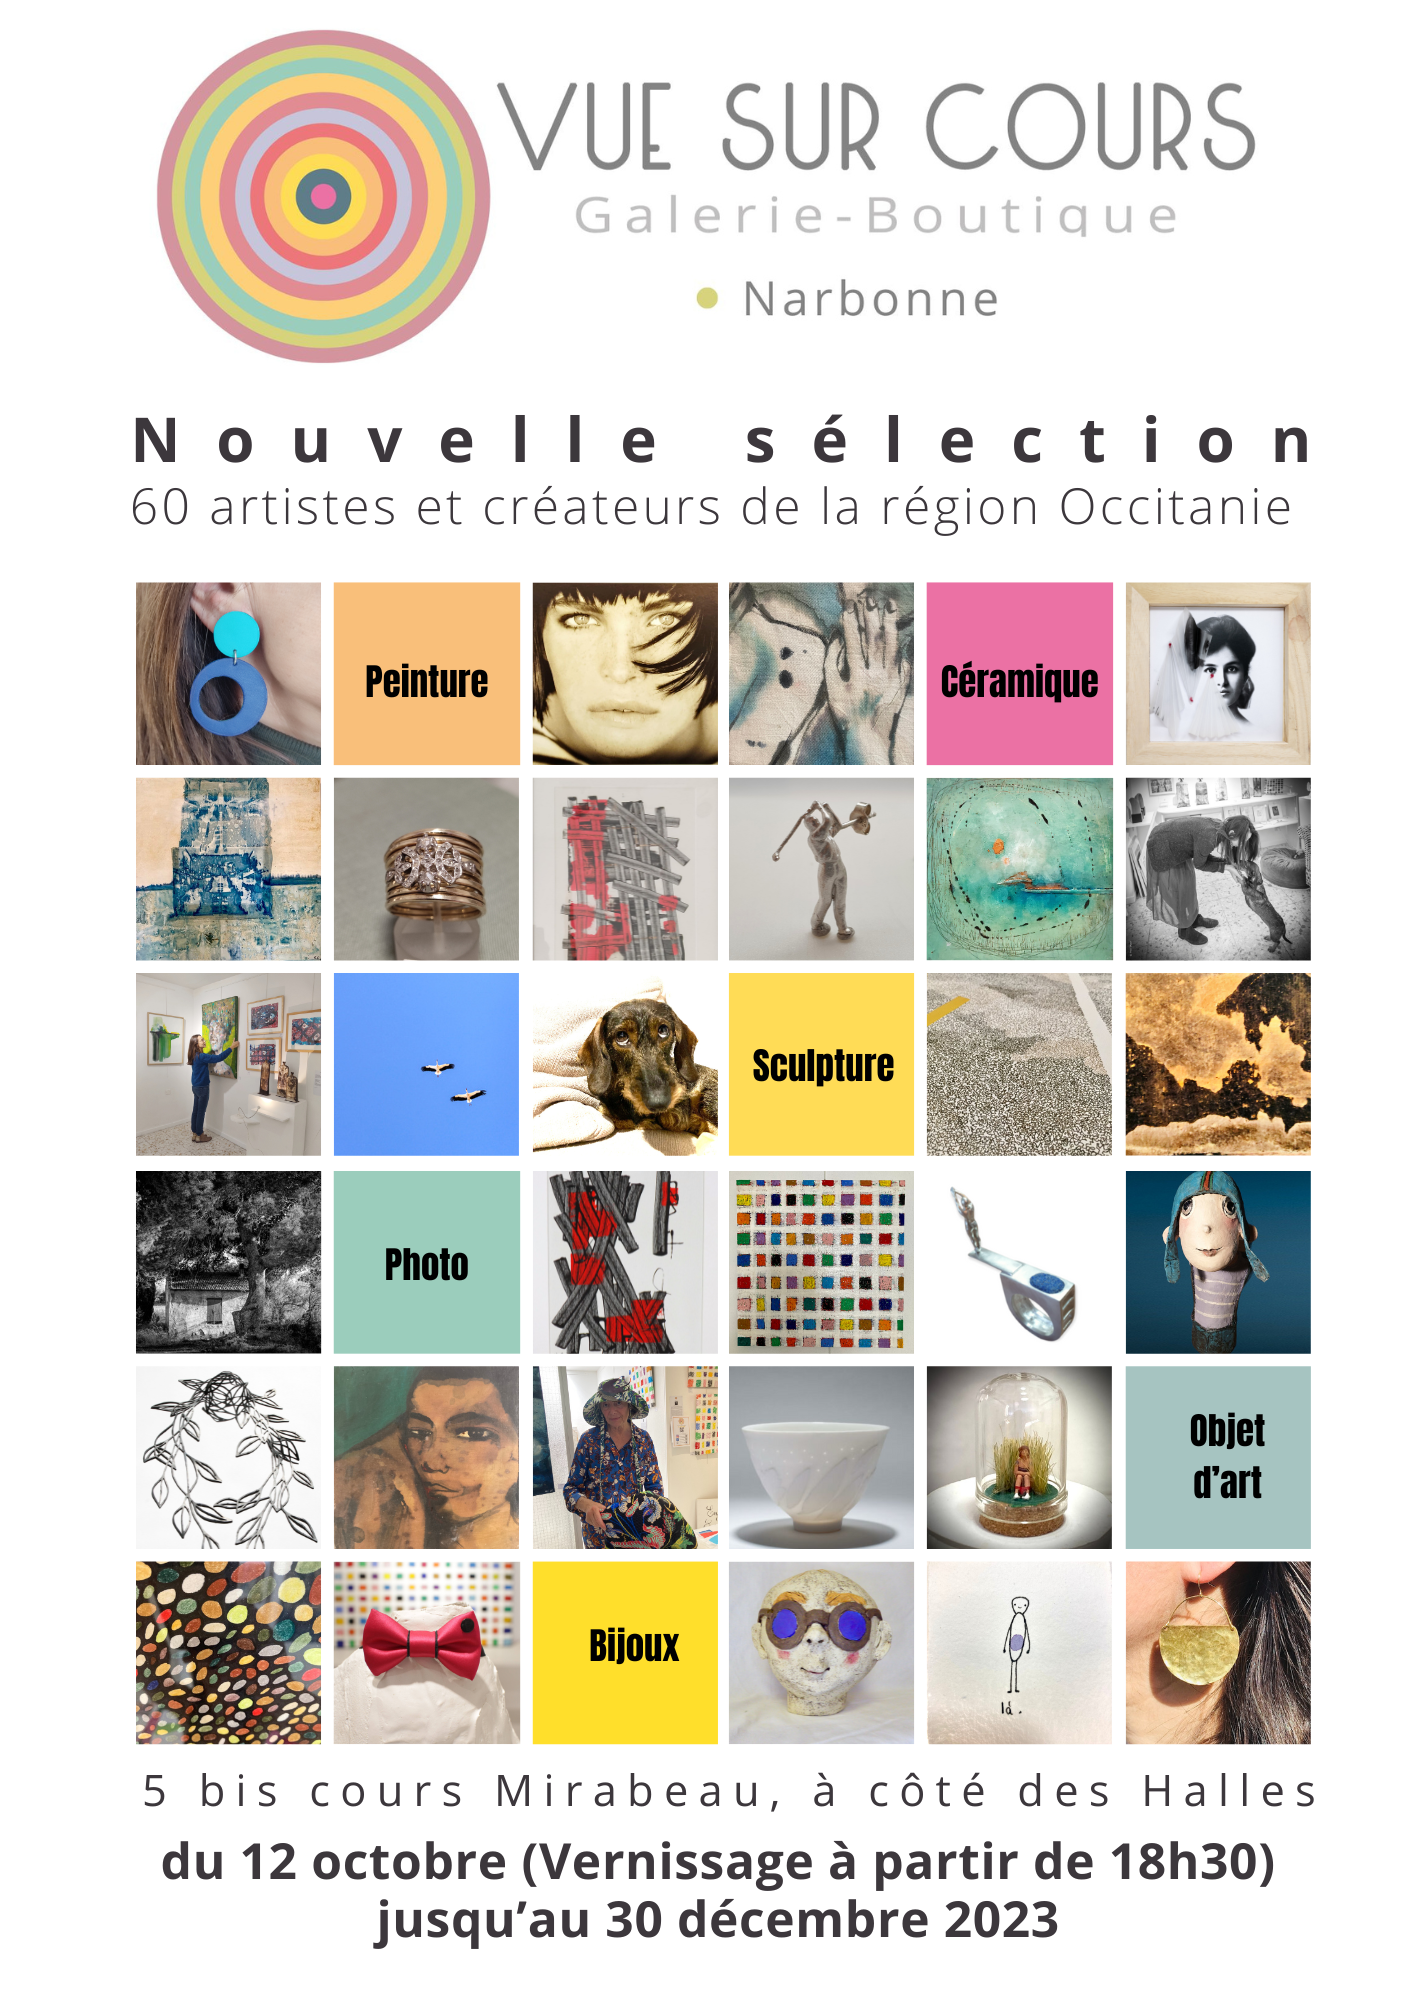 La galerie Vue sur Cours propose un évènement qui est un vernissage sur Narbonne